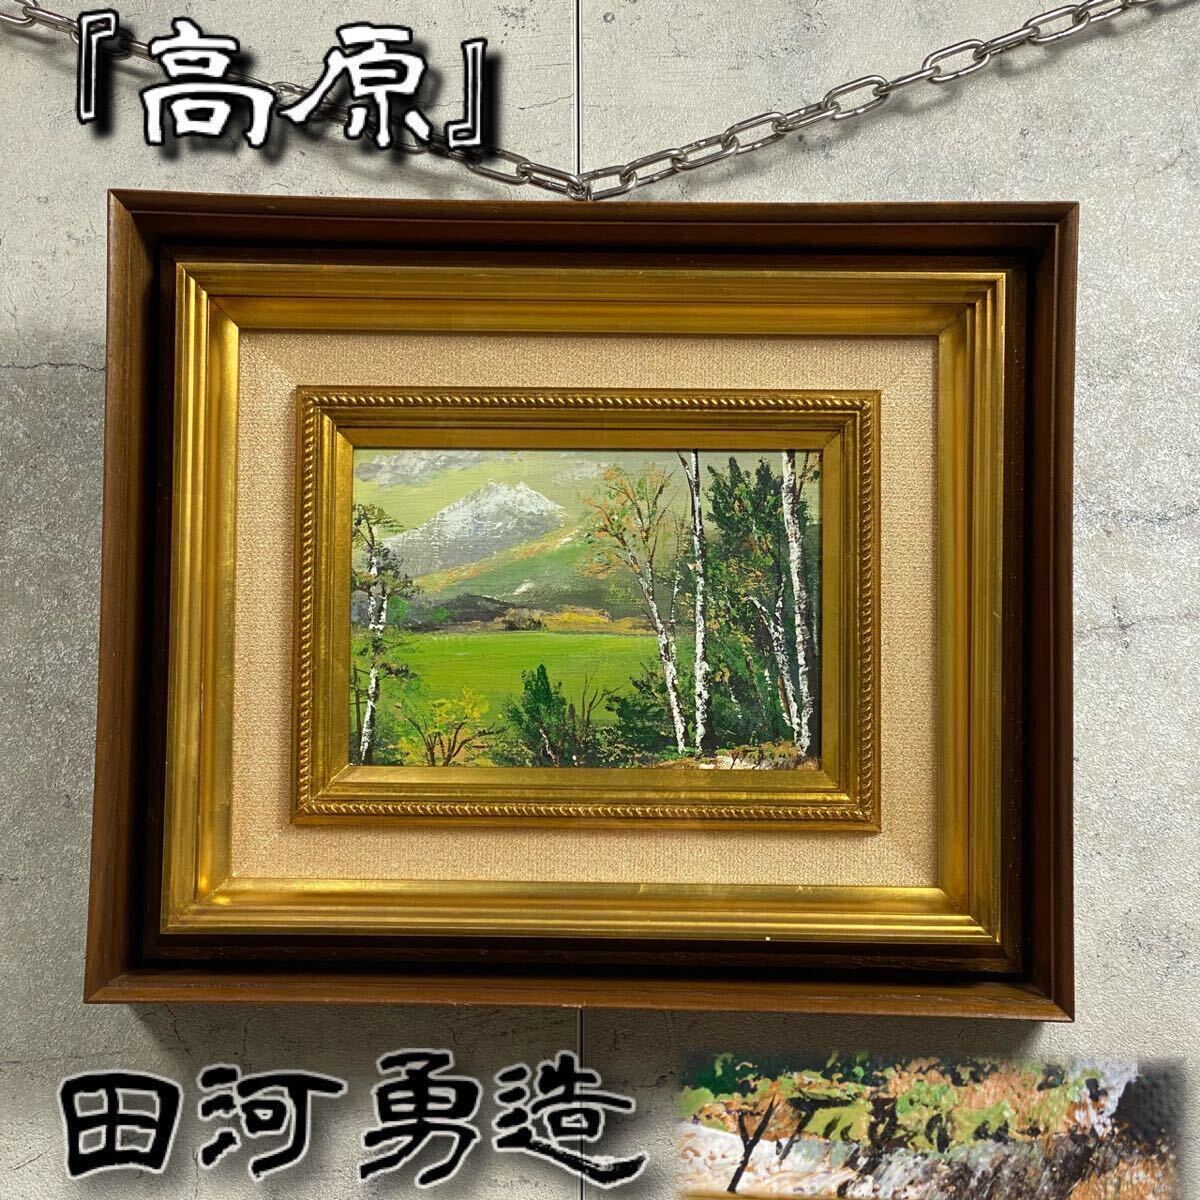 [Подлинная] Картина маслом «Береза» члена Sanki Юзо Тагавы, снежная гора, зеленая гора, фиолетовый ствол и зеленые листья, великолепный шедевр изображения, картина в рамке, горы улыбаются (весна), с автографом, пейзаж, Изобразительное искусство, Рисование, Картина маслом, Природа, Пейзаж